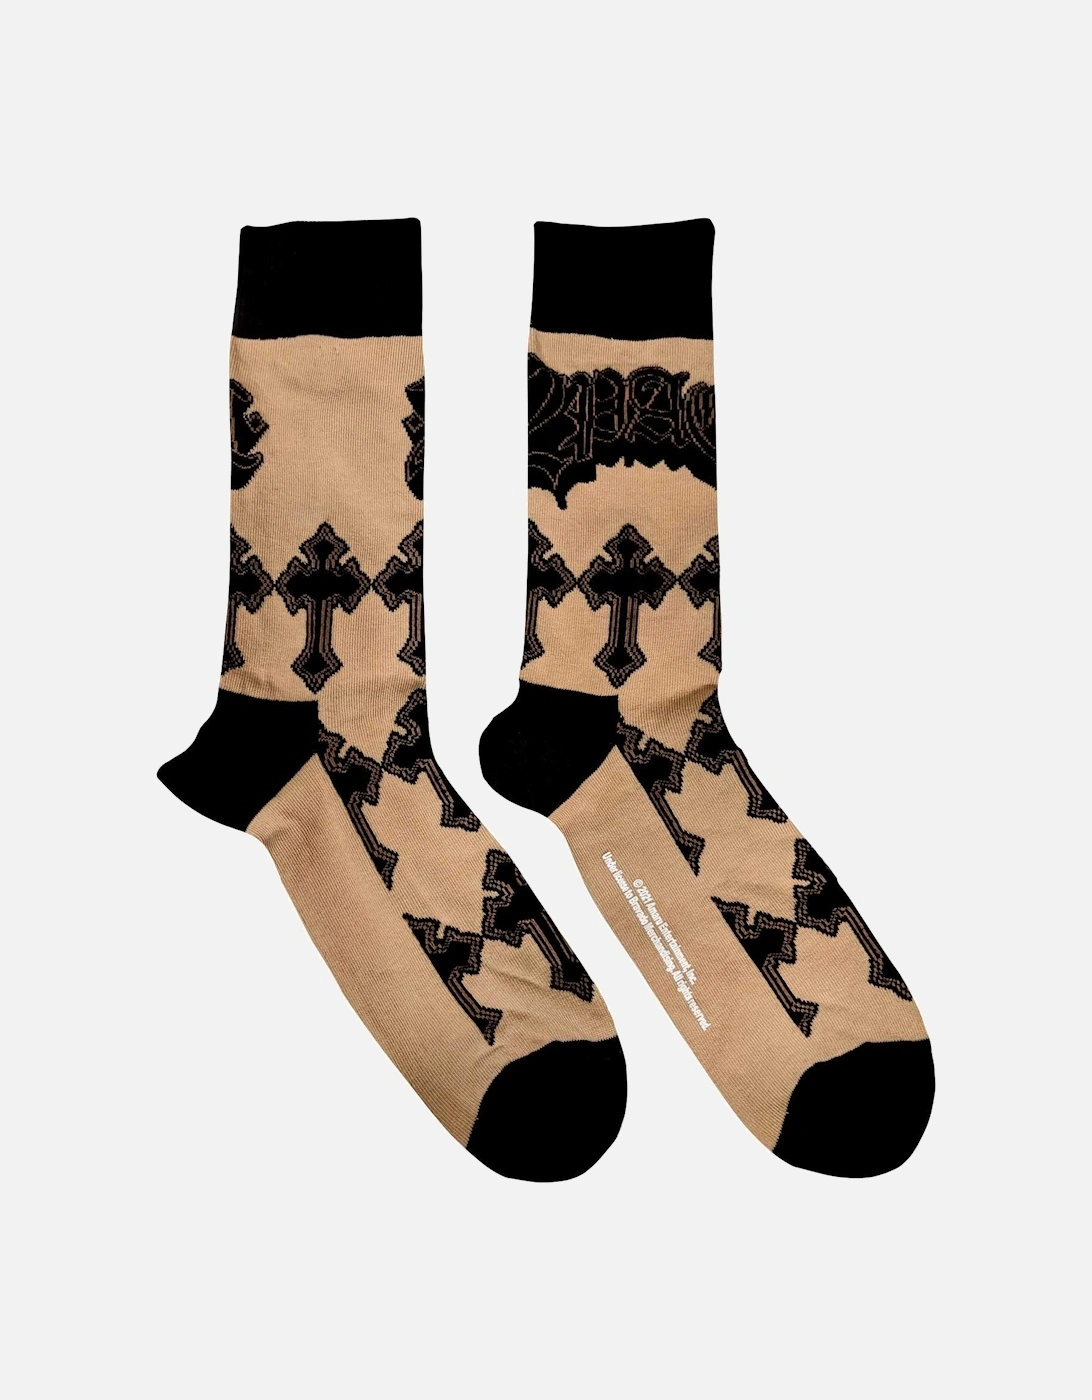 Unisex Adult Cross Ankle Socks, 3 of 2